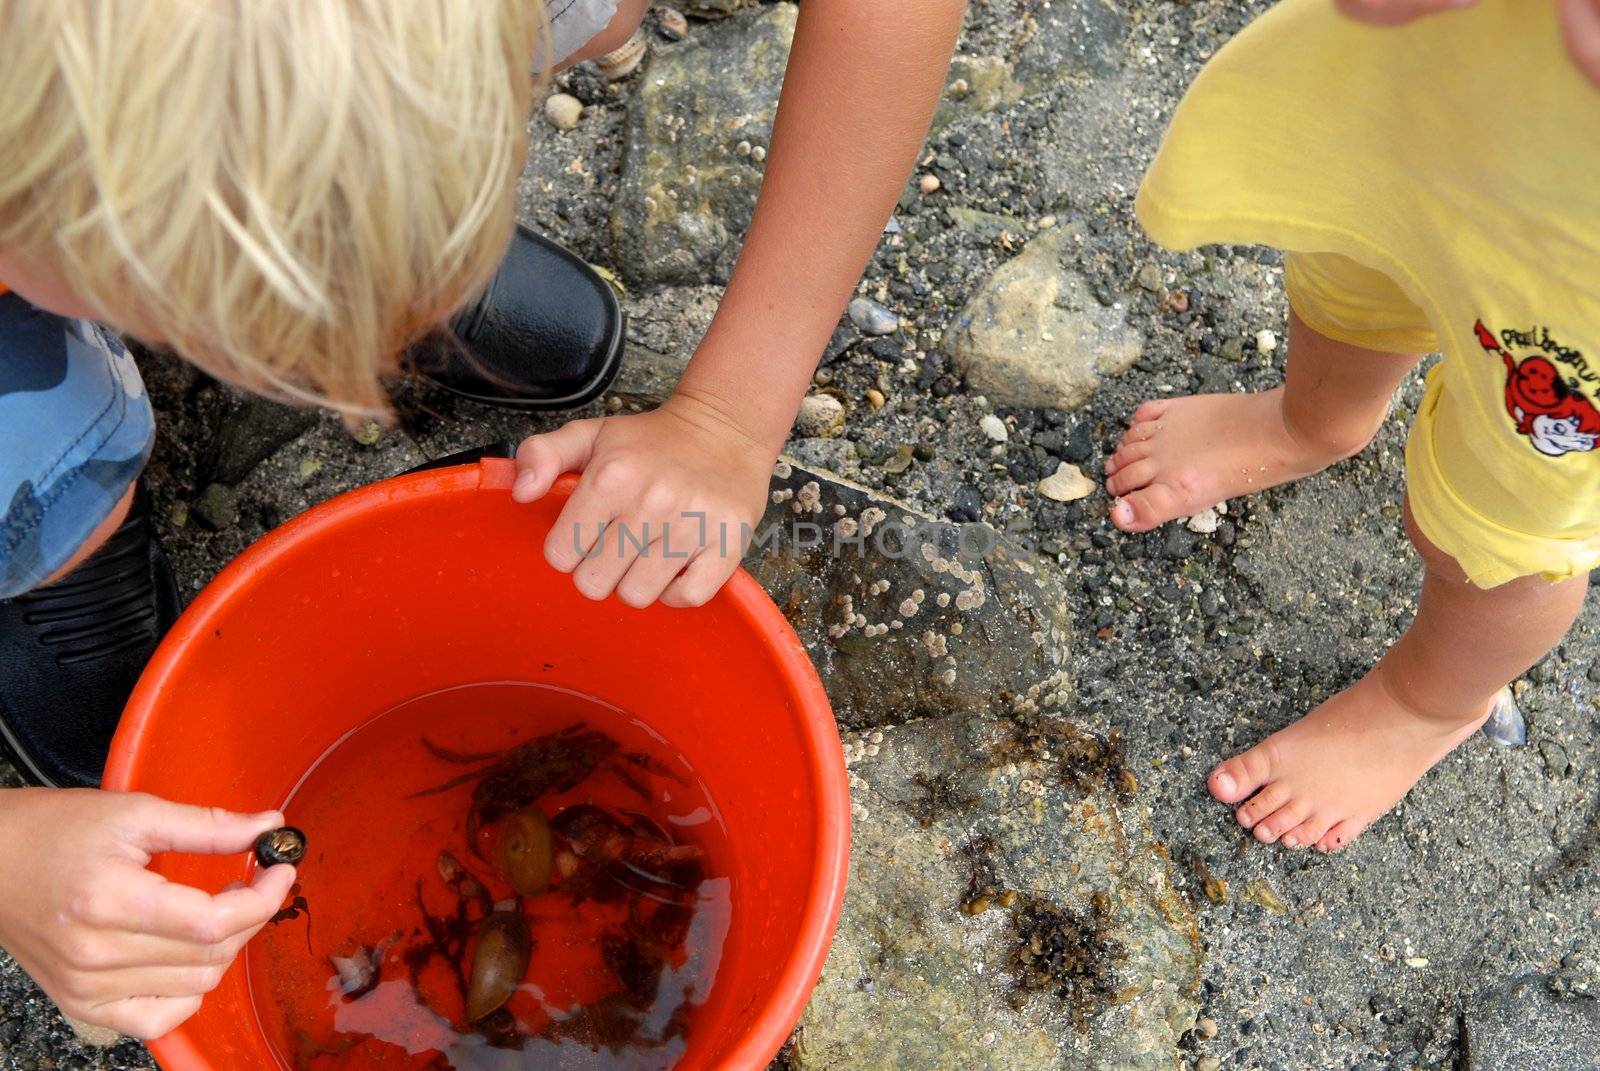 Scandinavian Lifestyle - catching crabs by Bildehagen